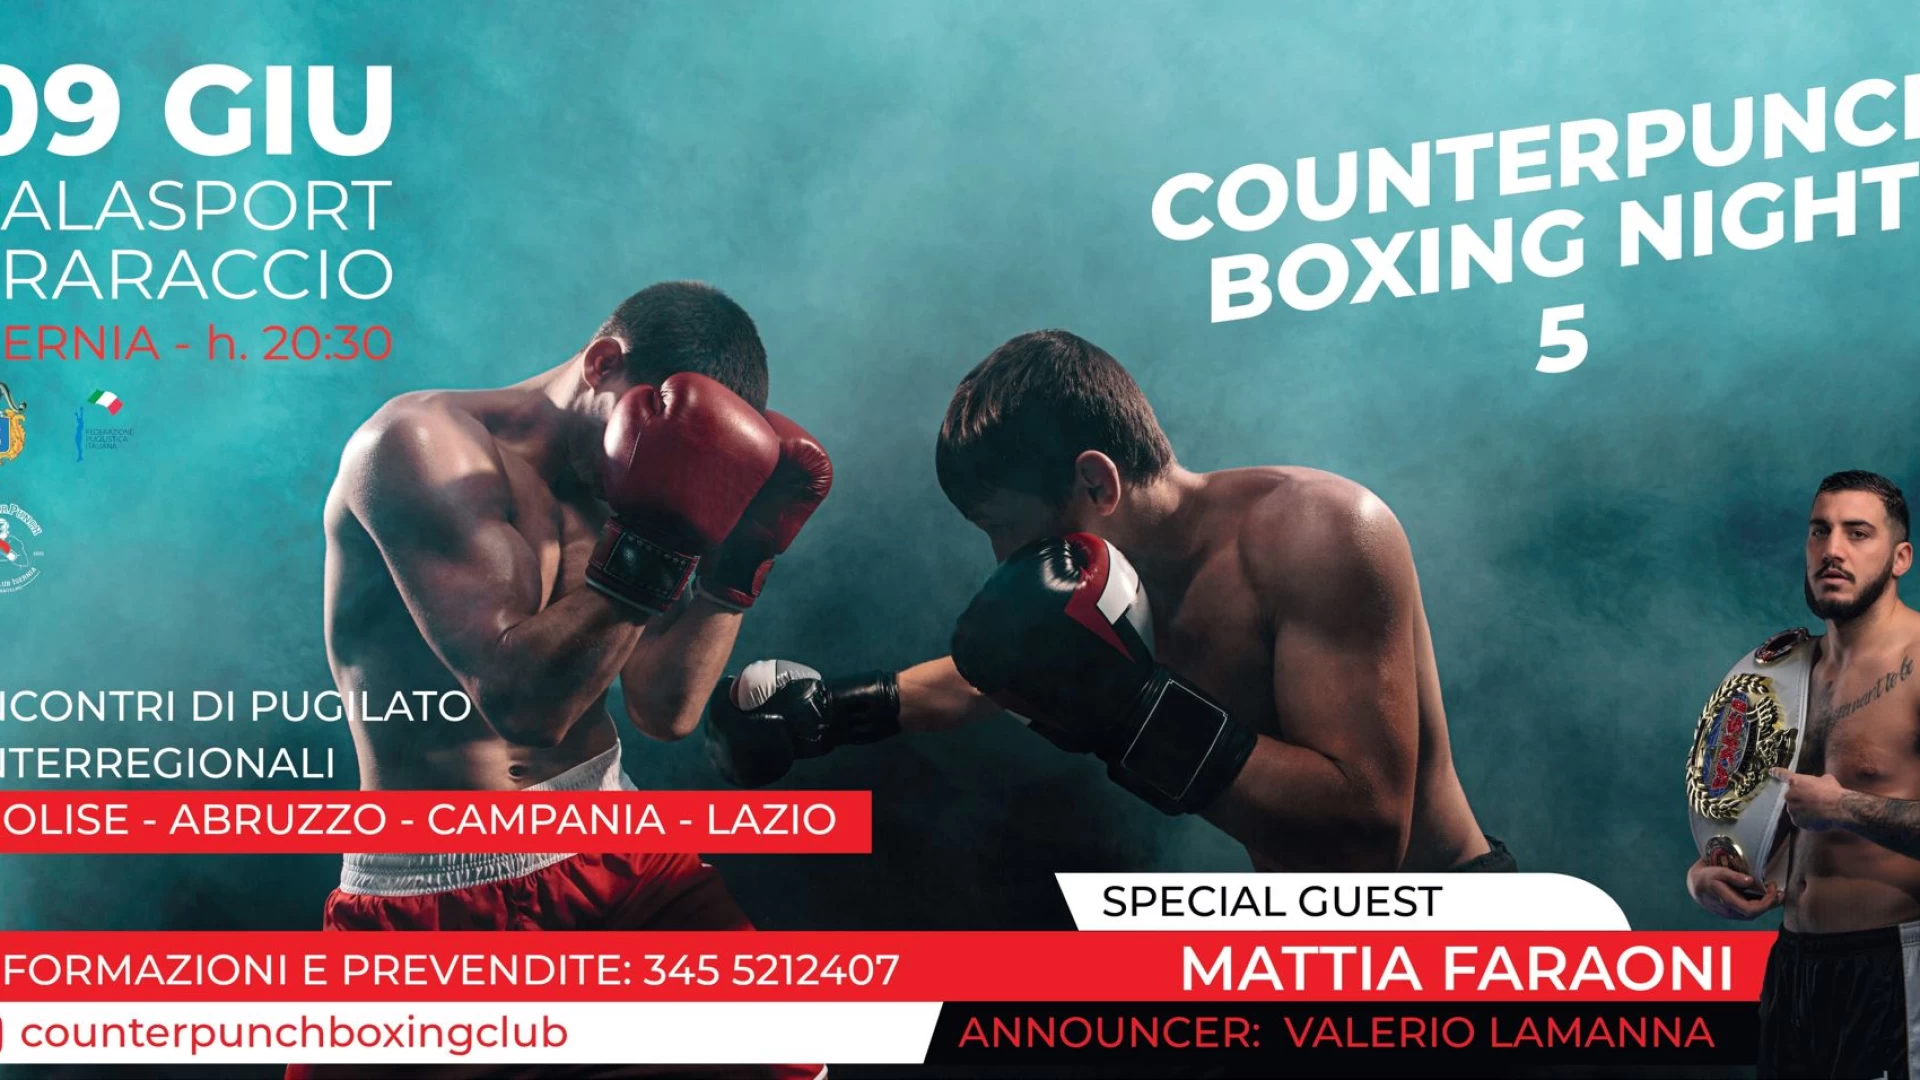 Isernia: Counterpunch Boxing Night 5. Al Palafraraccio il 9 giugno protagonista la grande boxe. Ospite d’onore Mattia Faraoni.